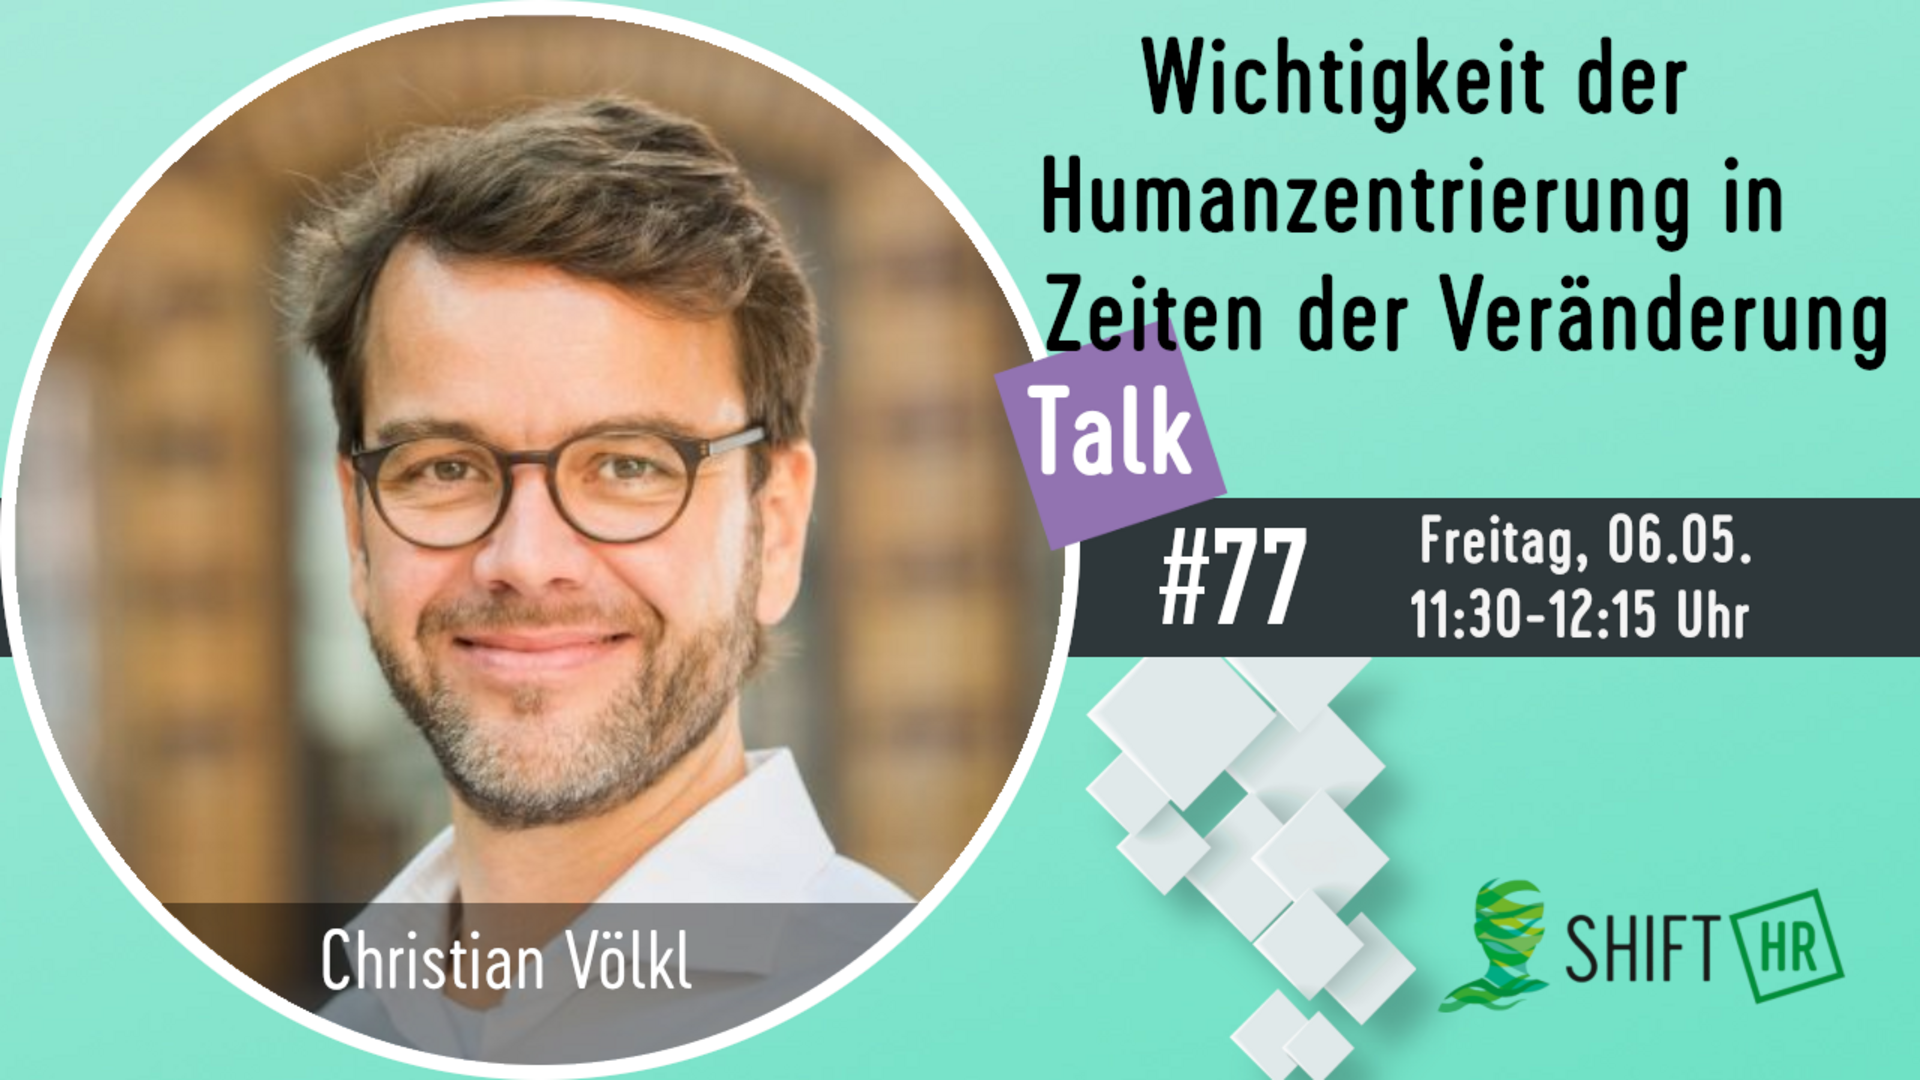 Im Gespräch mit Christian Völkl über die alte & neue Wichtigkeit der Humanzentrierung in Zeiten der Veränderung